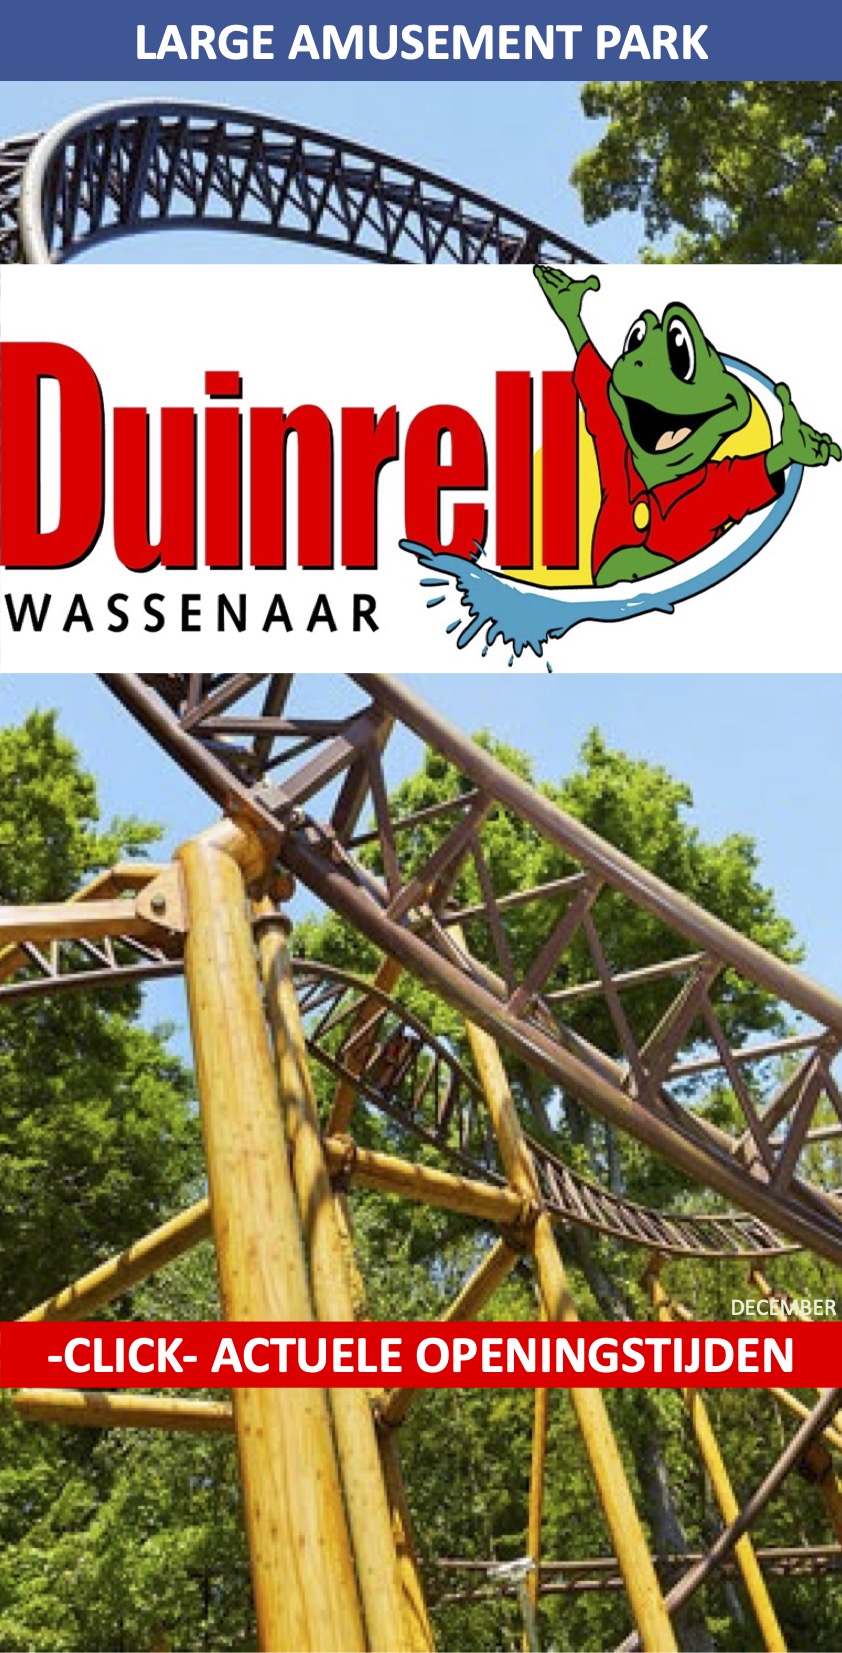 Duinrell Atractiepark Wassenaar december